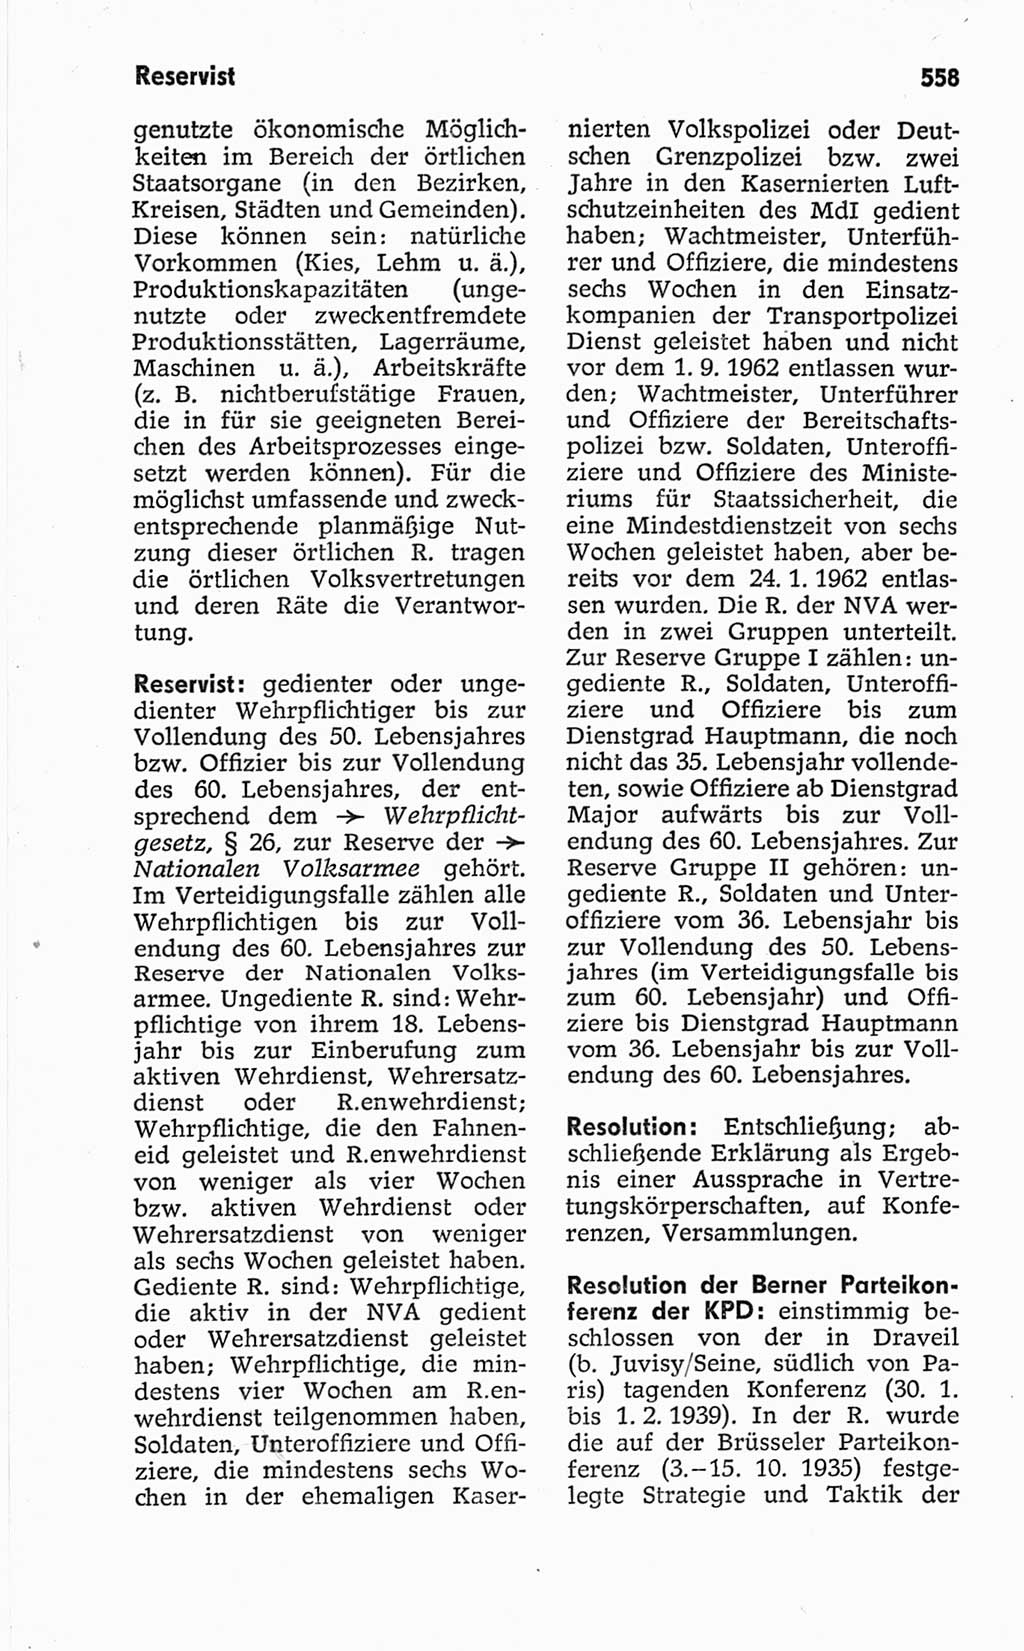 Kleines politisches Wörterbuch [Deutsche Demokratische Republik (DDR)] 1967, Seite 558 (Kl. pol. Wb. DDR 1967, S. 558)